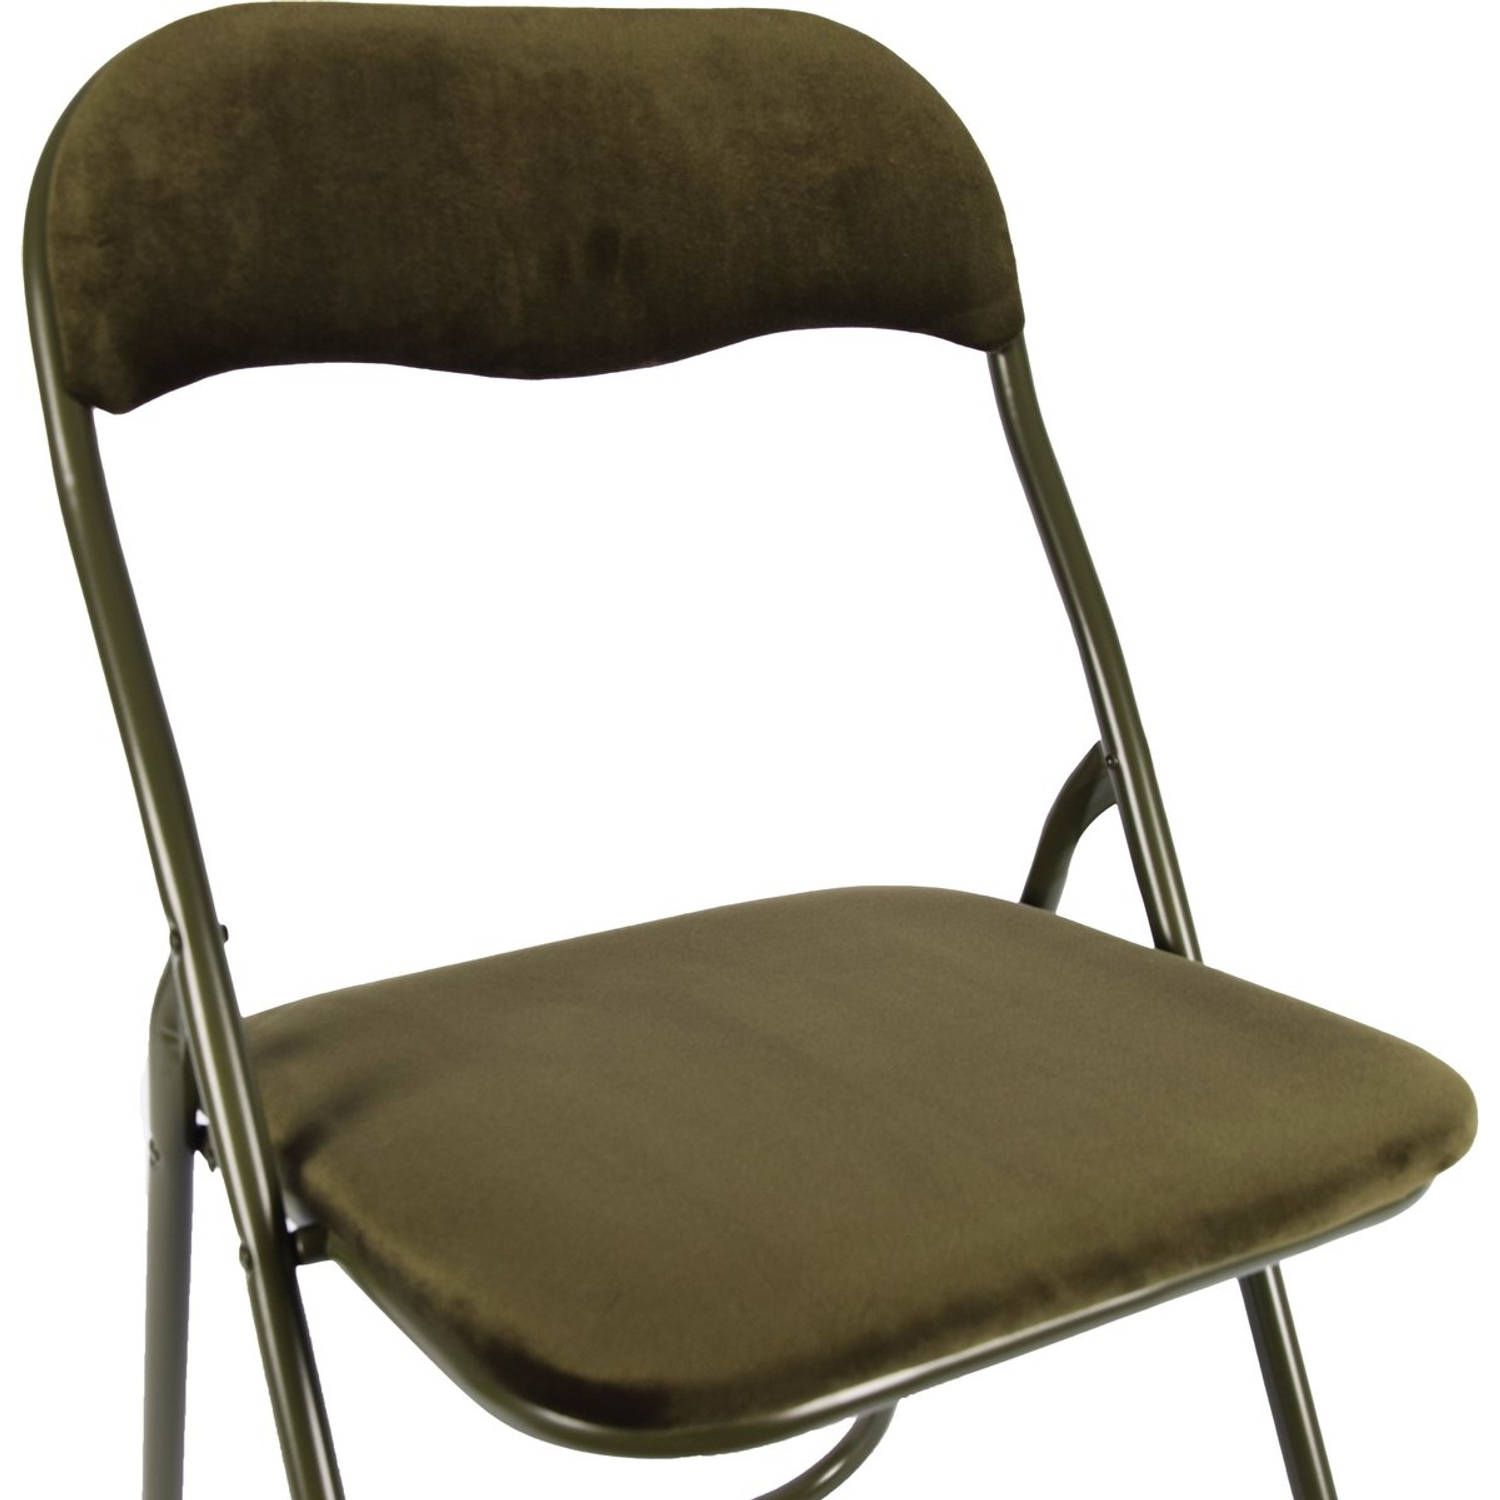 Klapstoel met zithoogte van 43 cml Vouwstoel velvet zitvlak en rug bekleed Groen